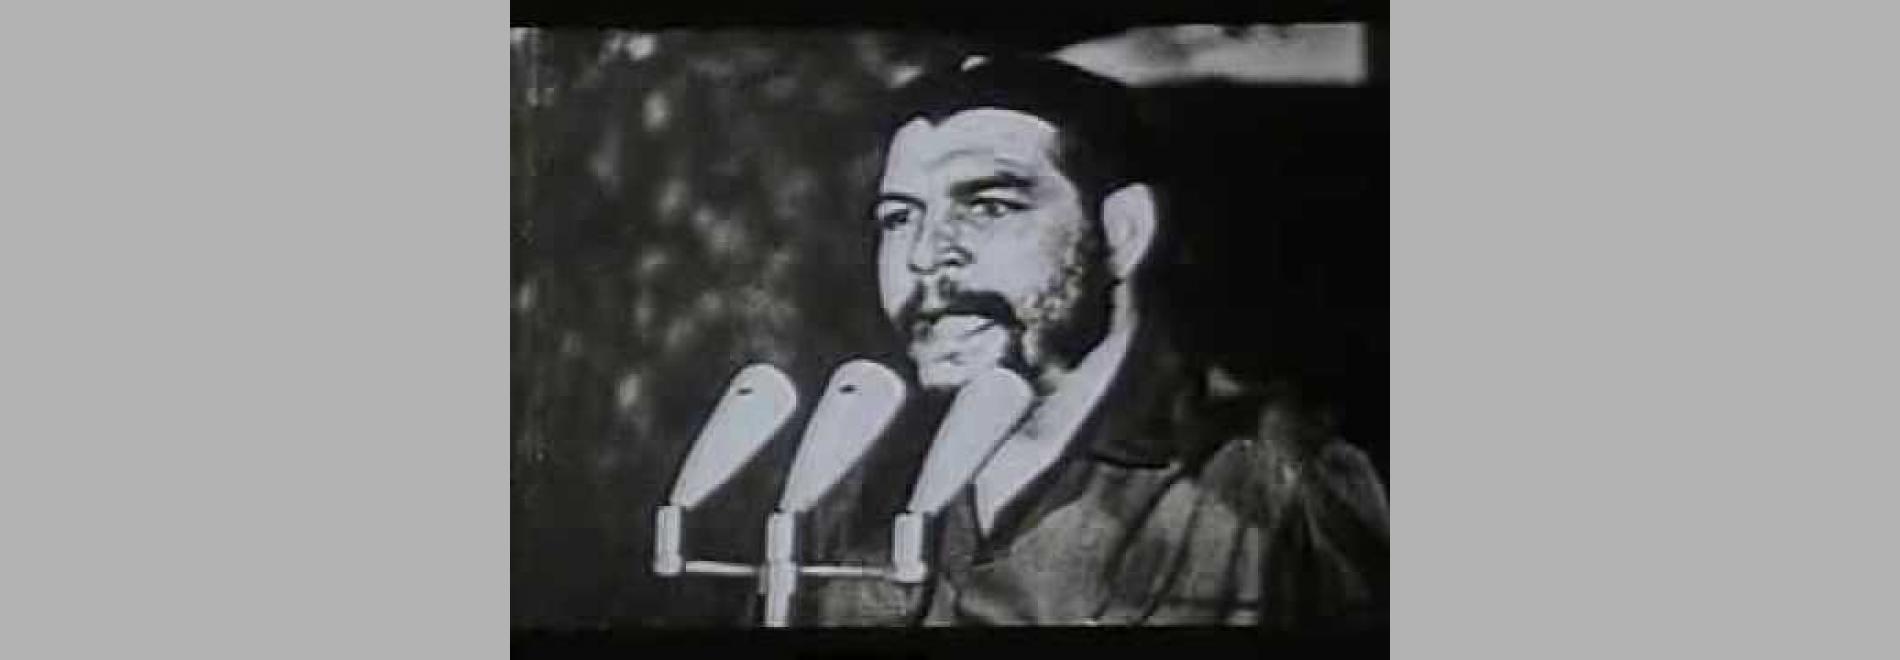 Hasta la victoria siempre (Santiago Álvarez, 1967)